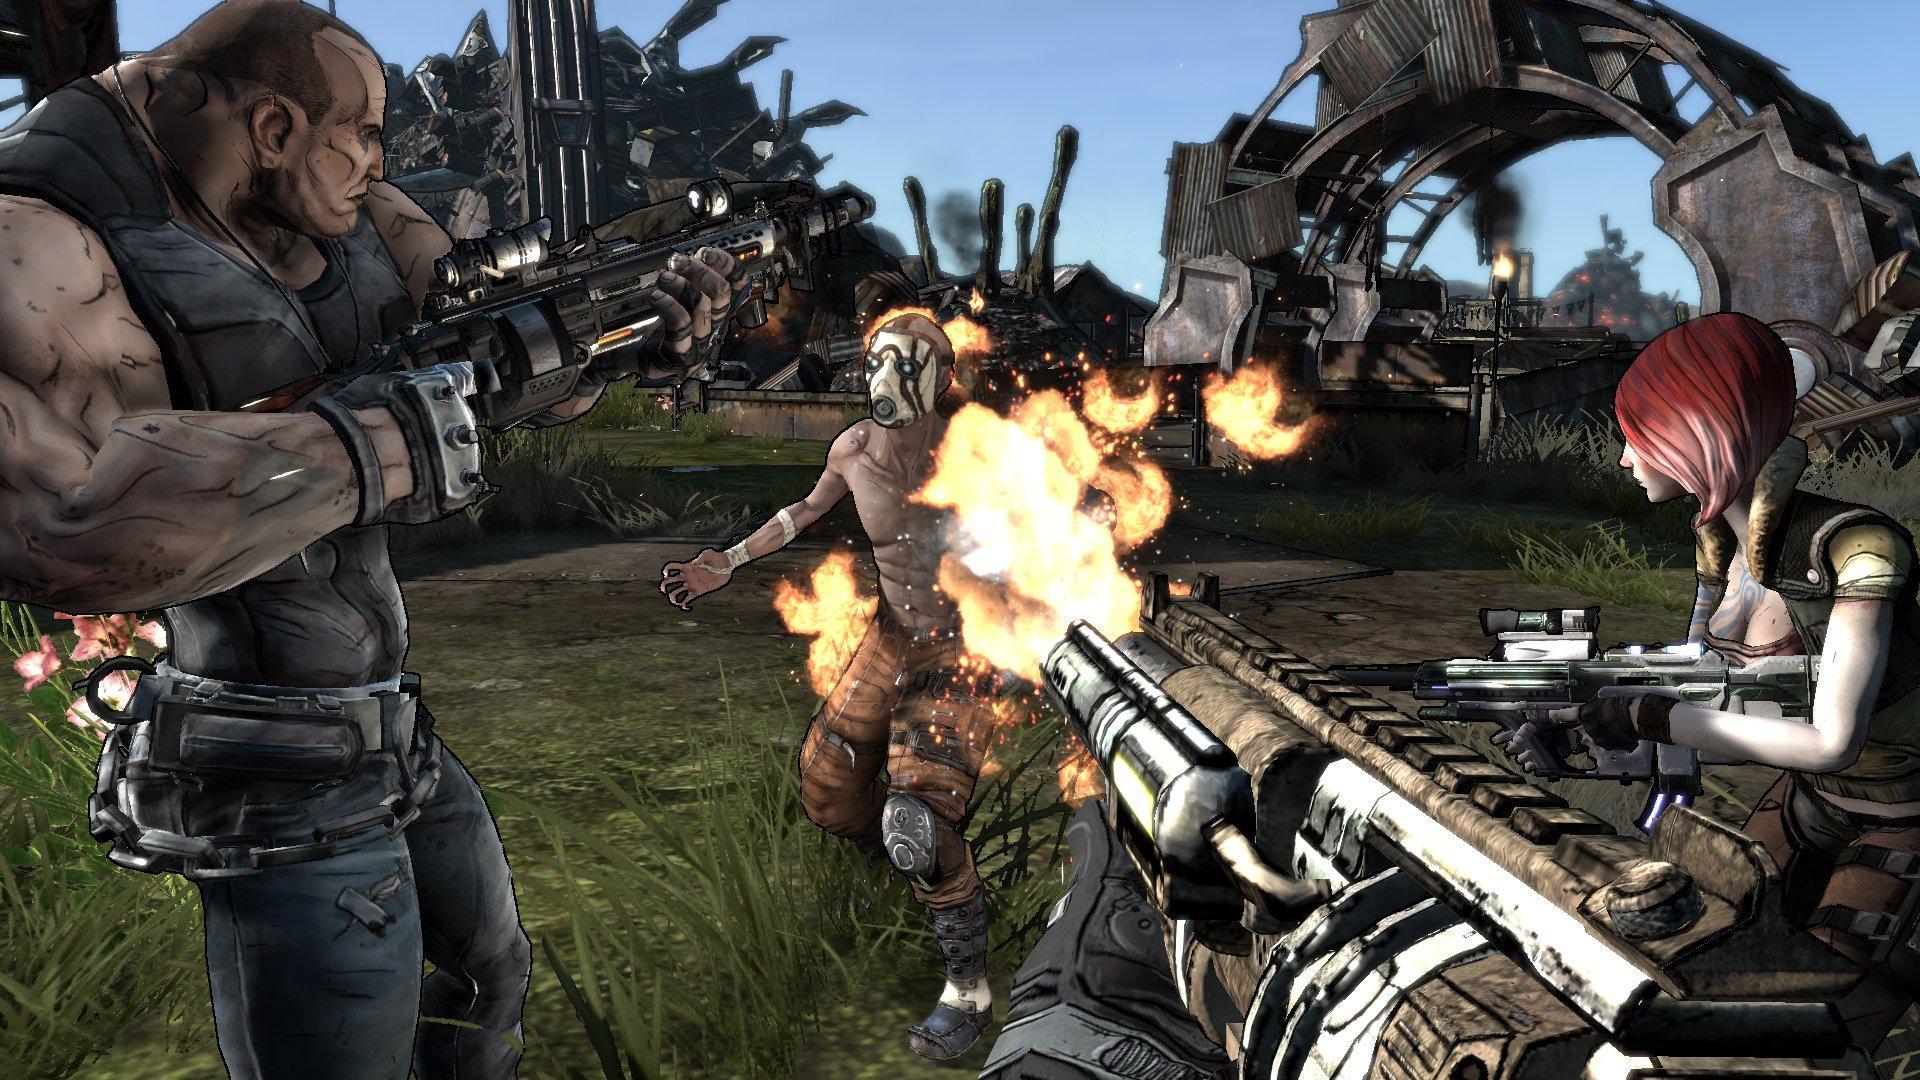  Gears of War Triple Pack - Xbox 360 (Bundle) : Video Games